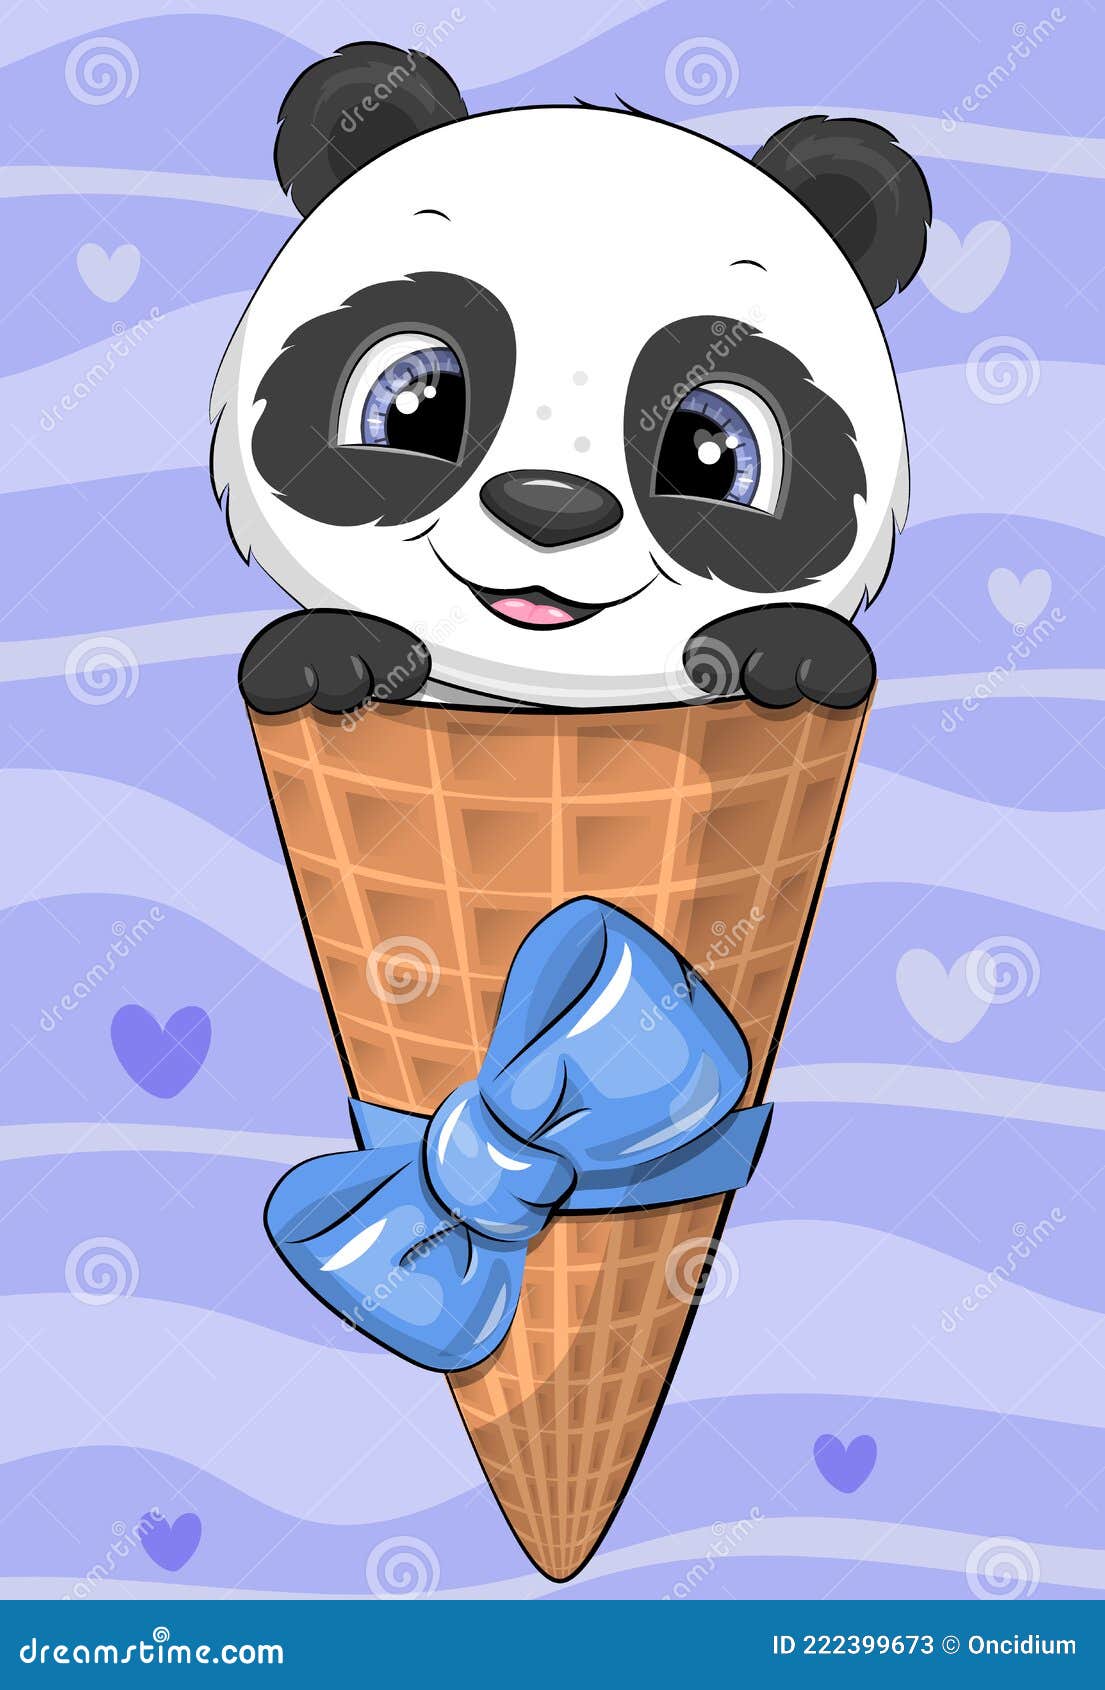 Panda com ilustração de desenho de sorvete